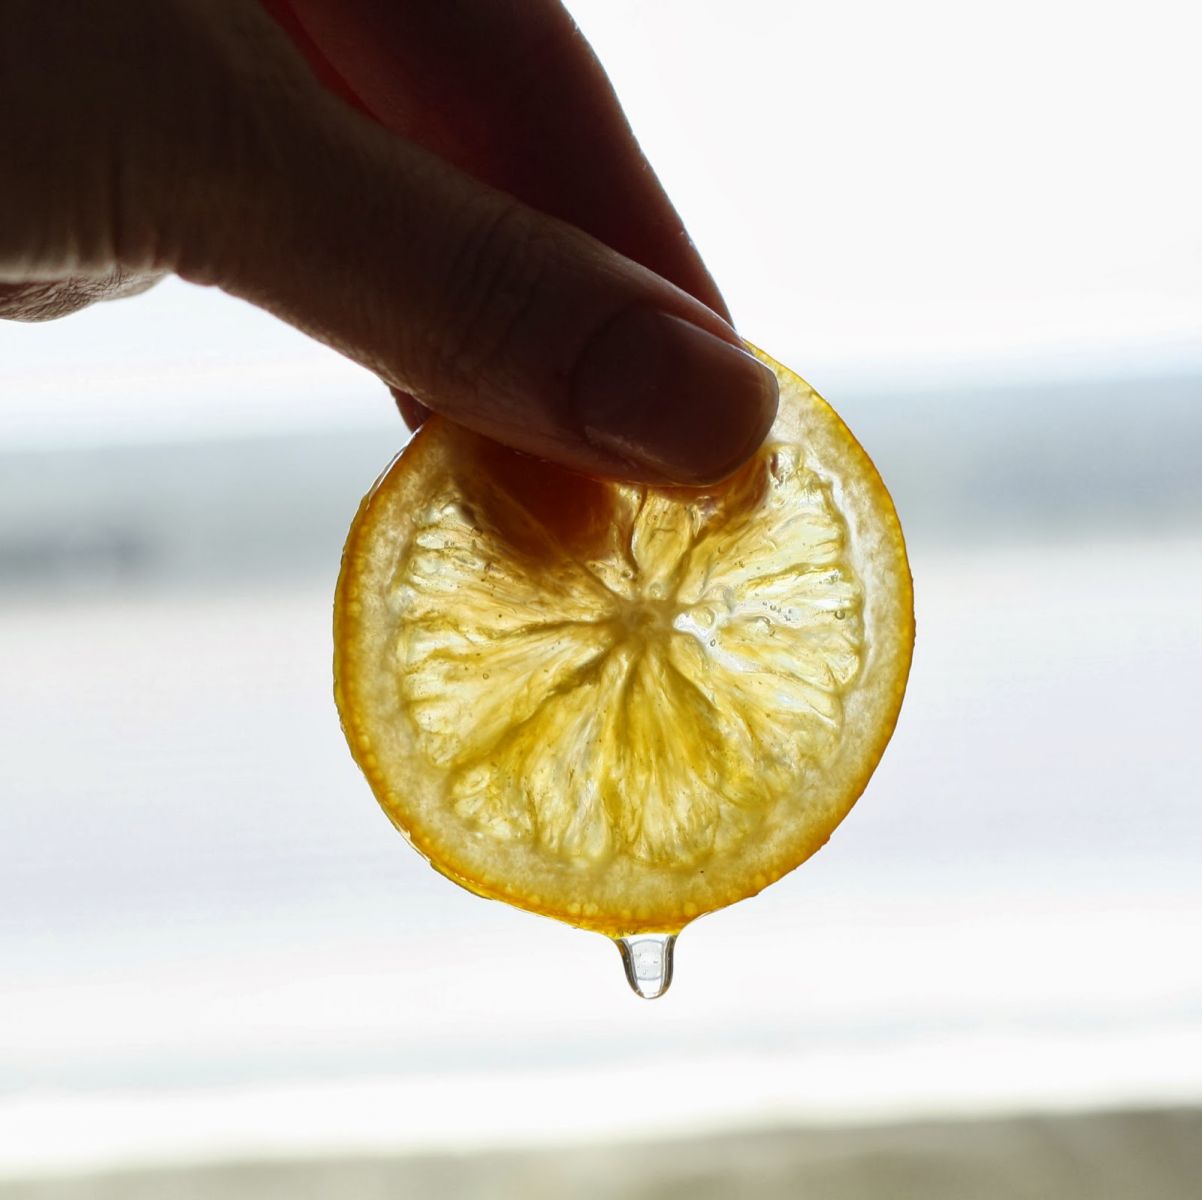 Regras para conservar limão siciliano